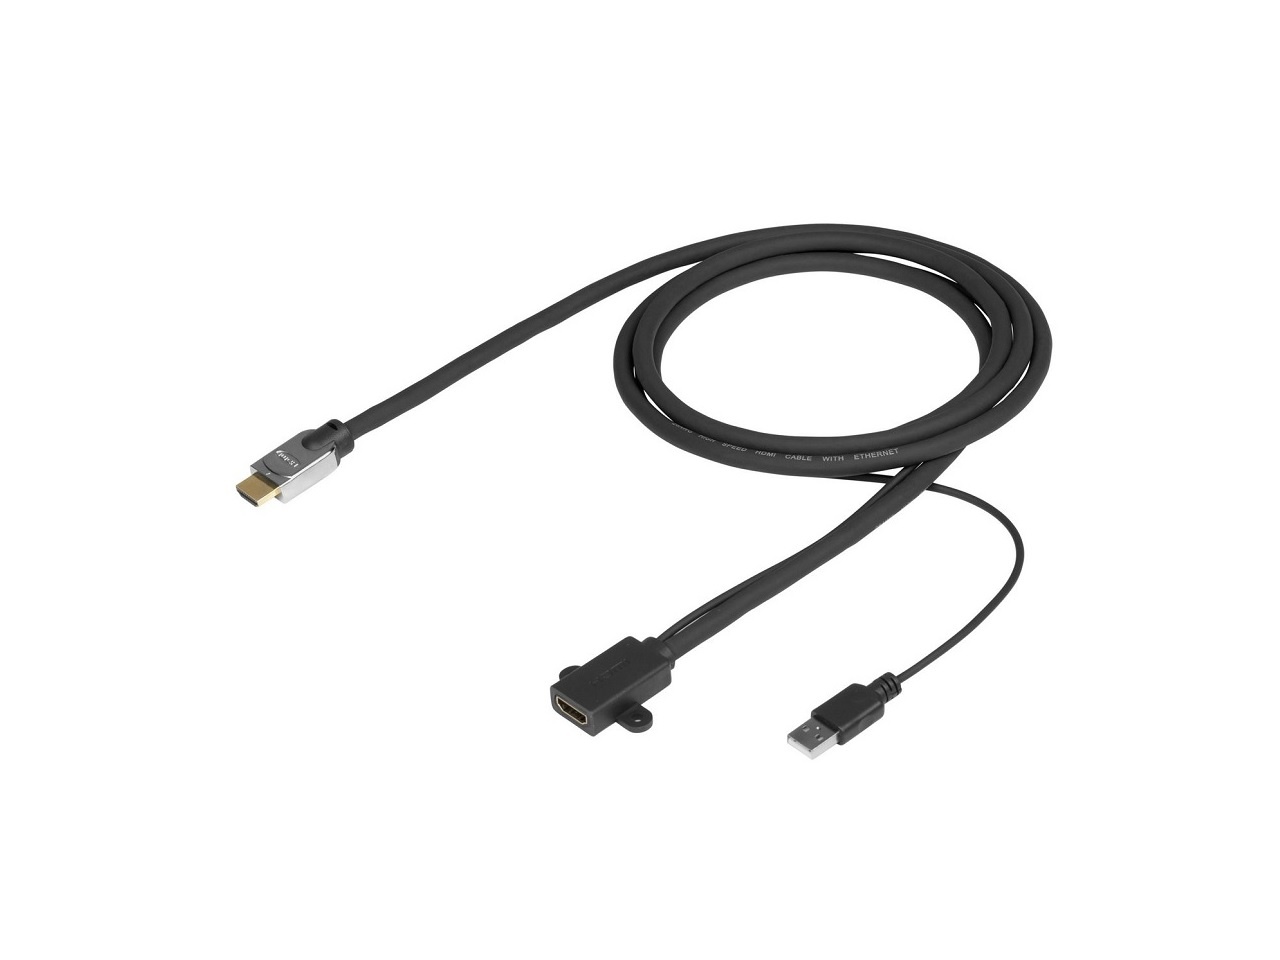 Rögzíthető HDMI aljzat optikai kábelekhez. Aktív HDMI hosszabbító kábel